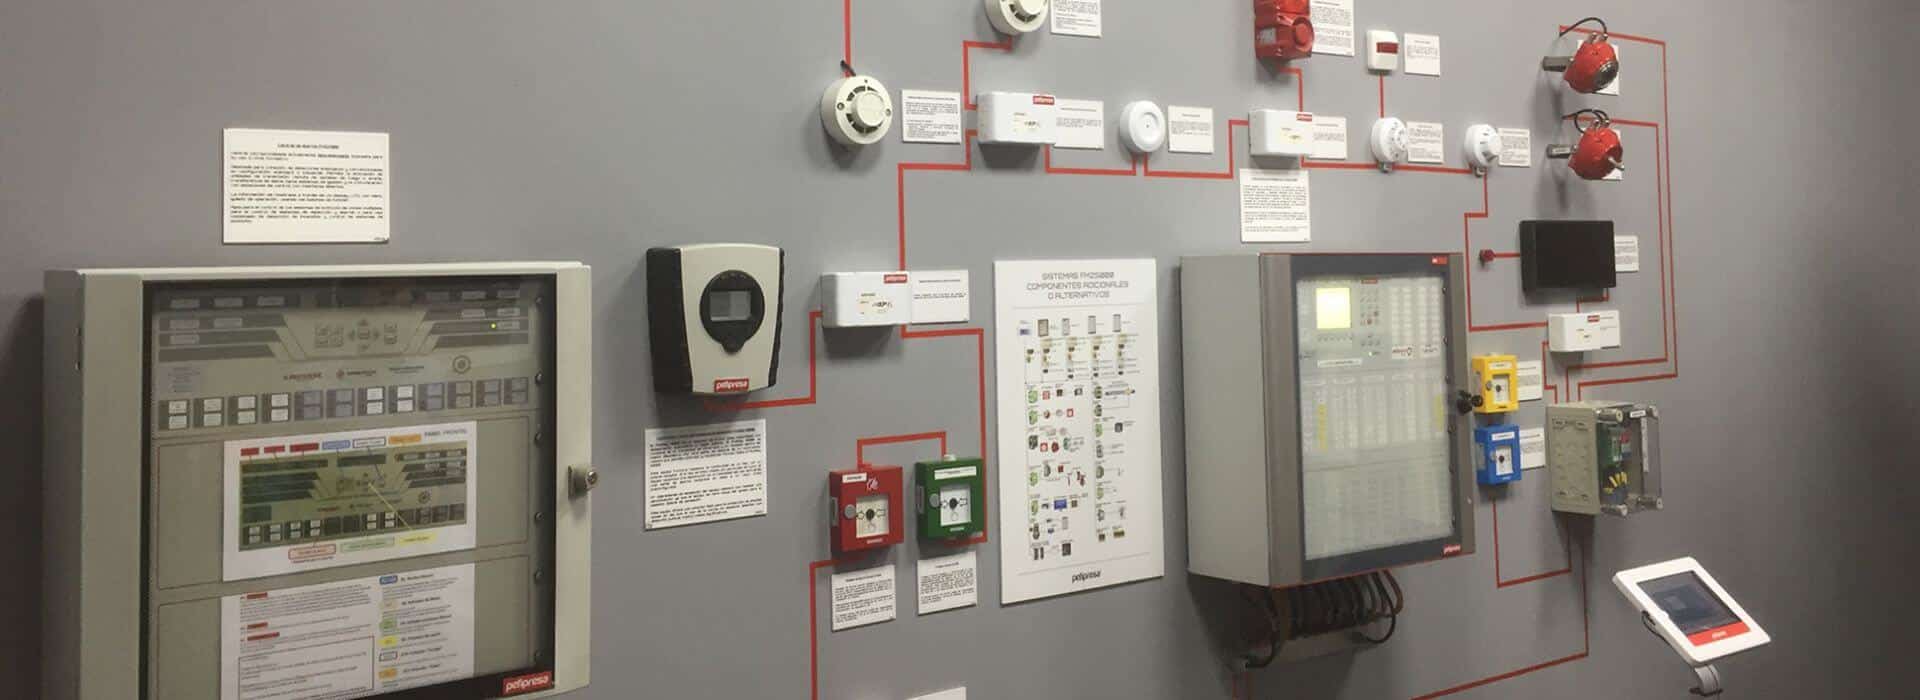 instalacion sistemas de deteccion y alarma contra incendios